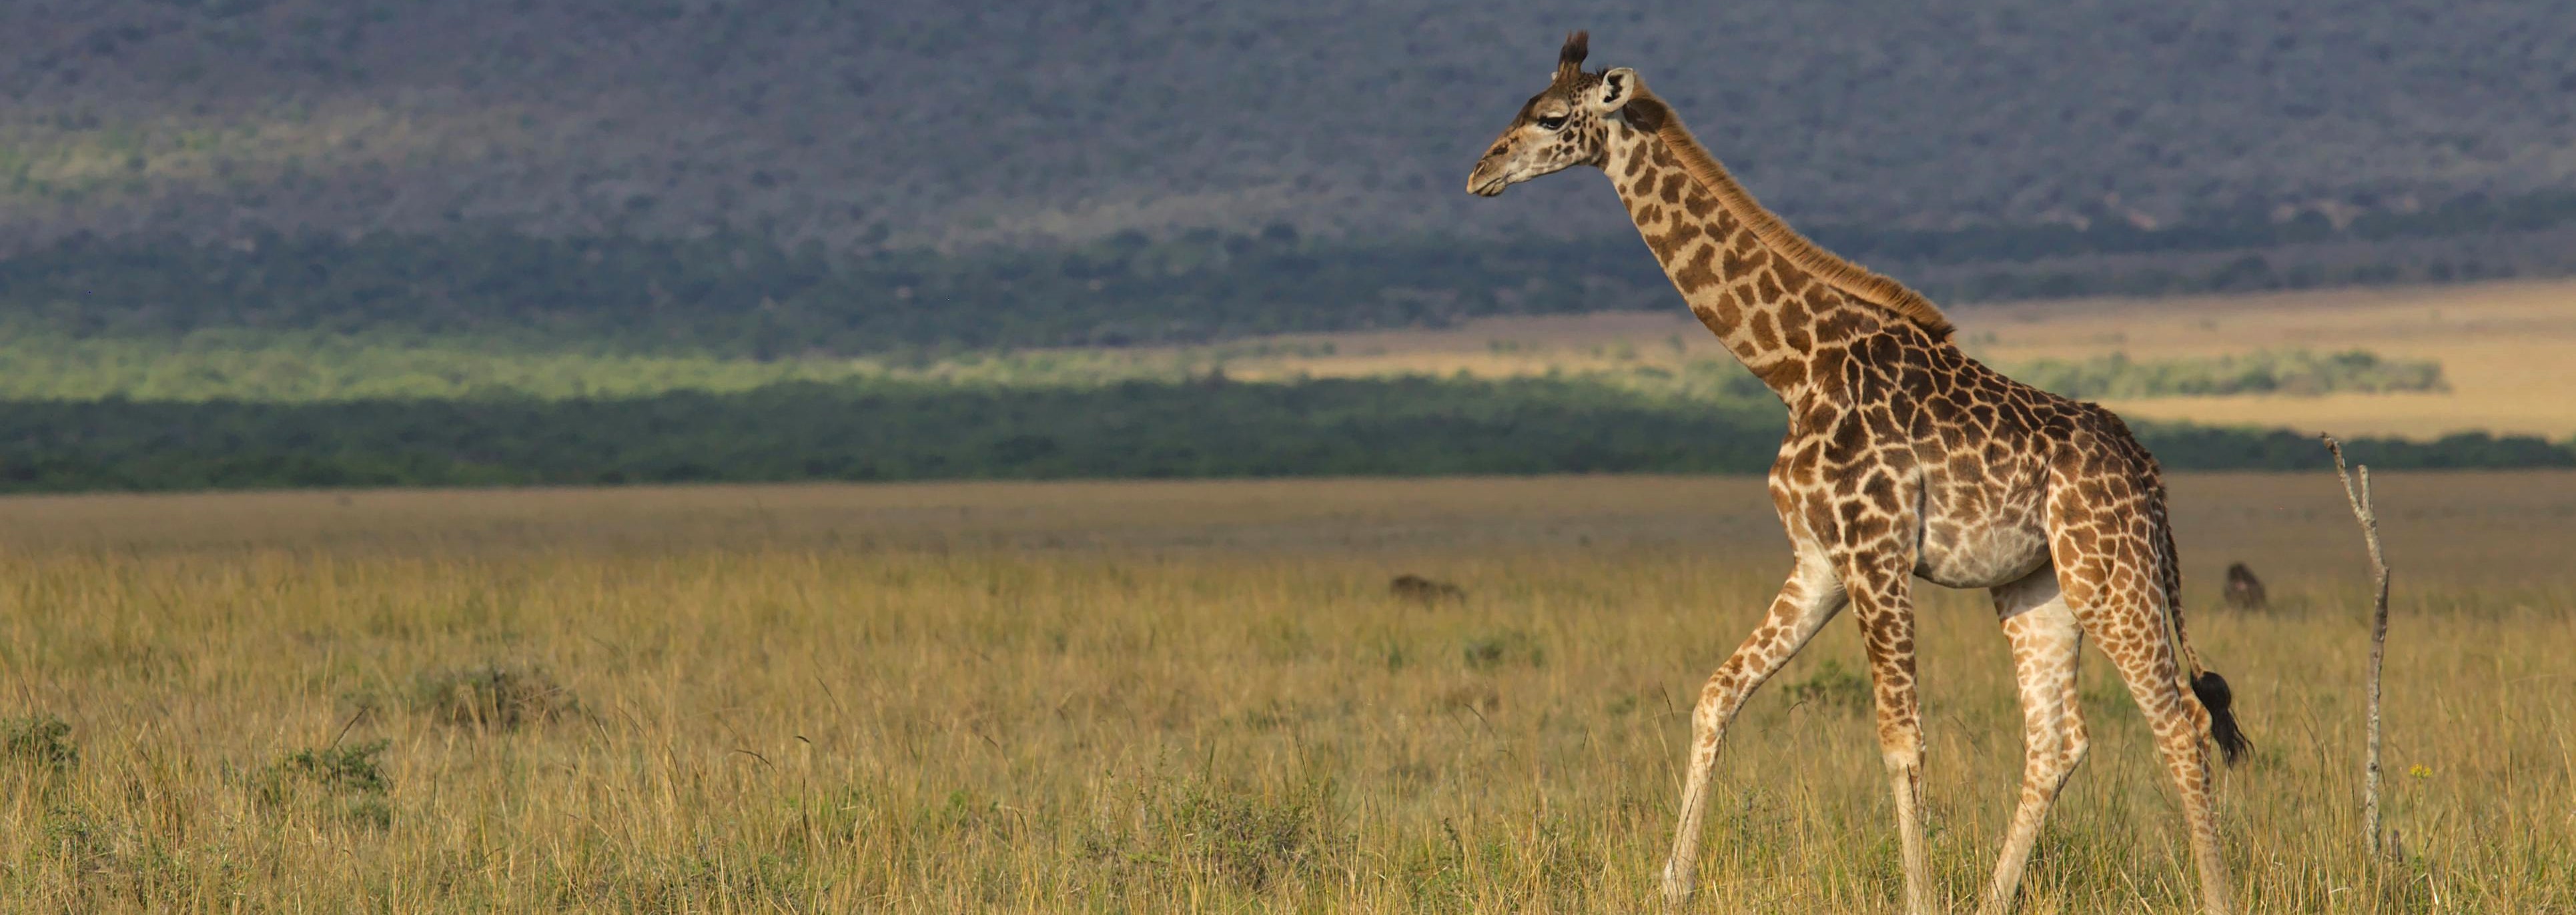 Masai giraffe in Kenya